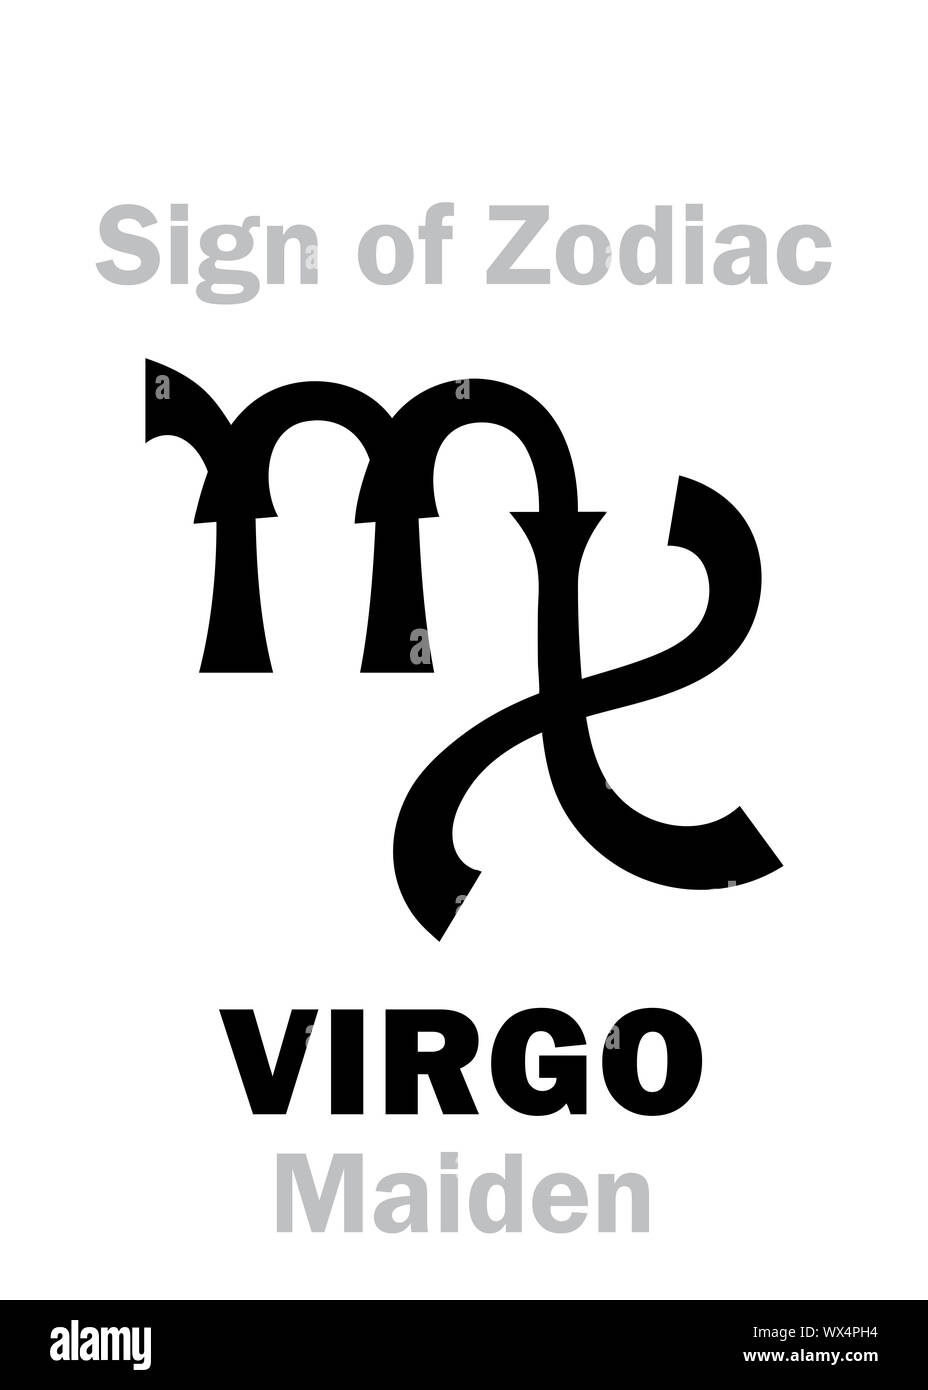 Astrologia: segno zodiacale della Vergine (Maiden) Foto Stock